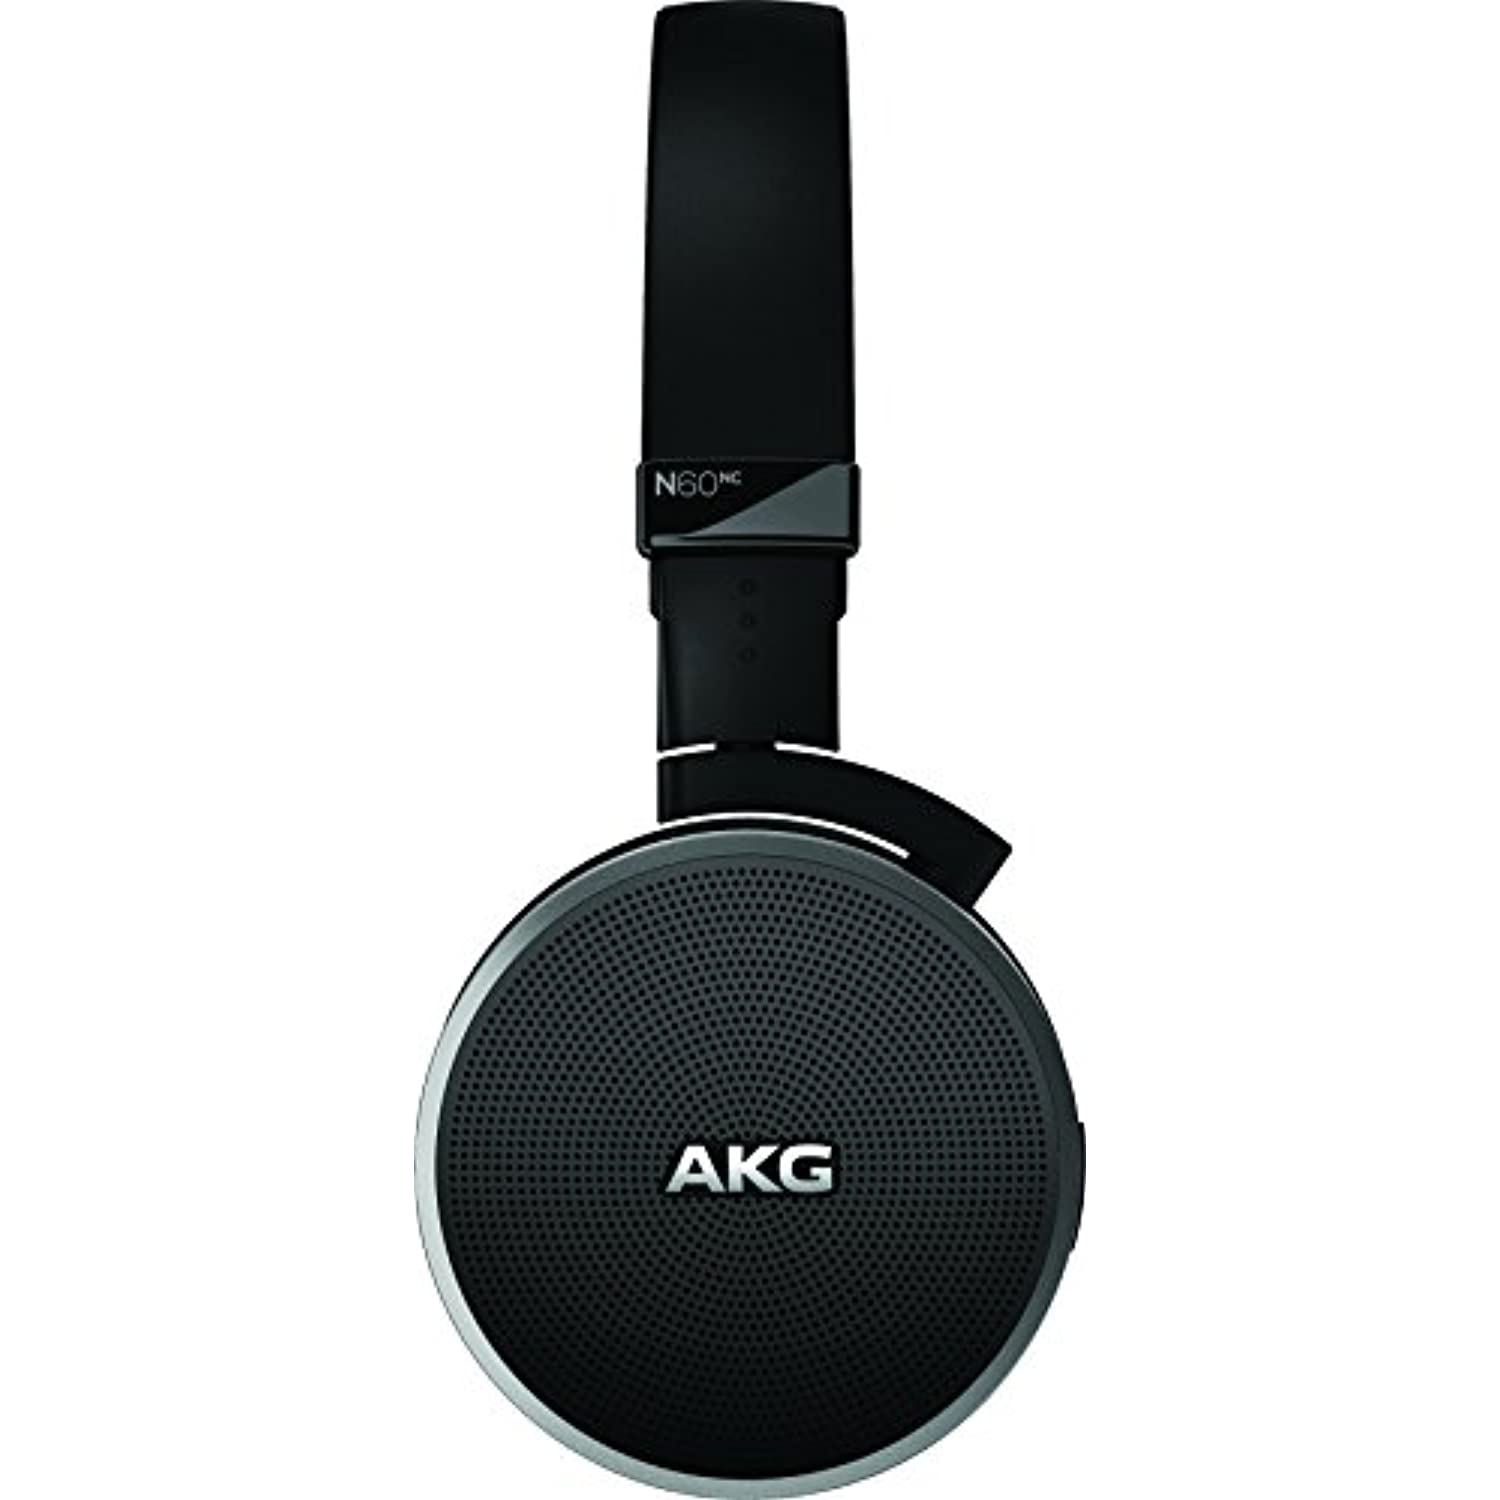 AKG Noise Canceling Headphone Black (N60)